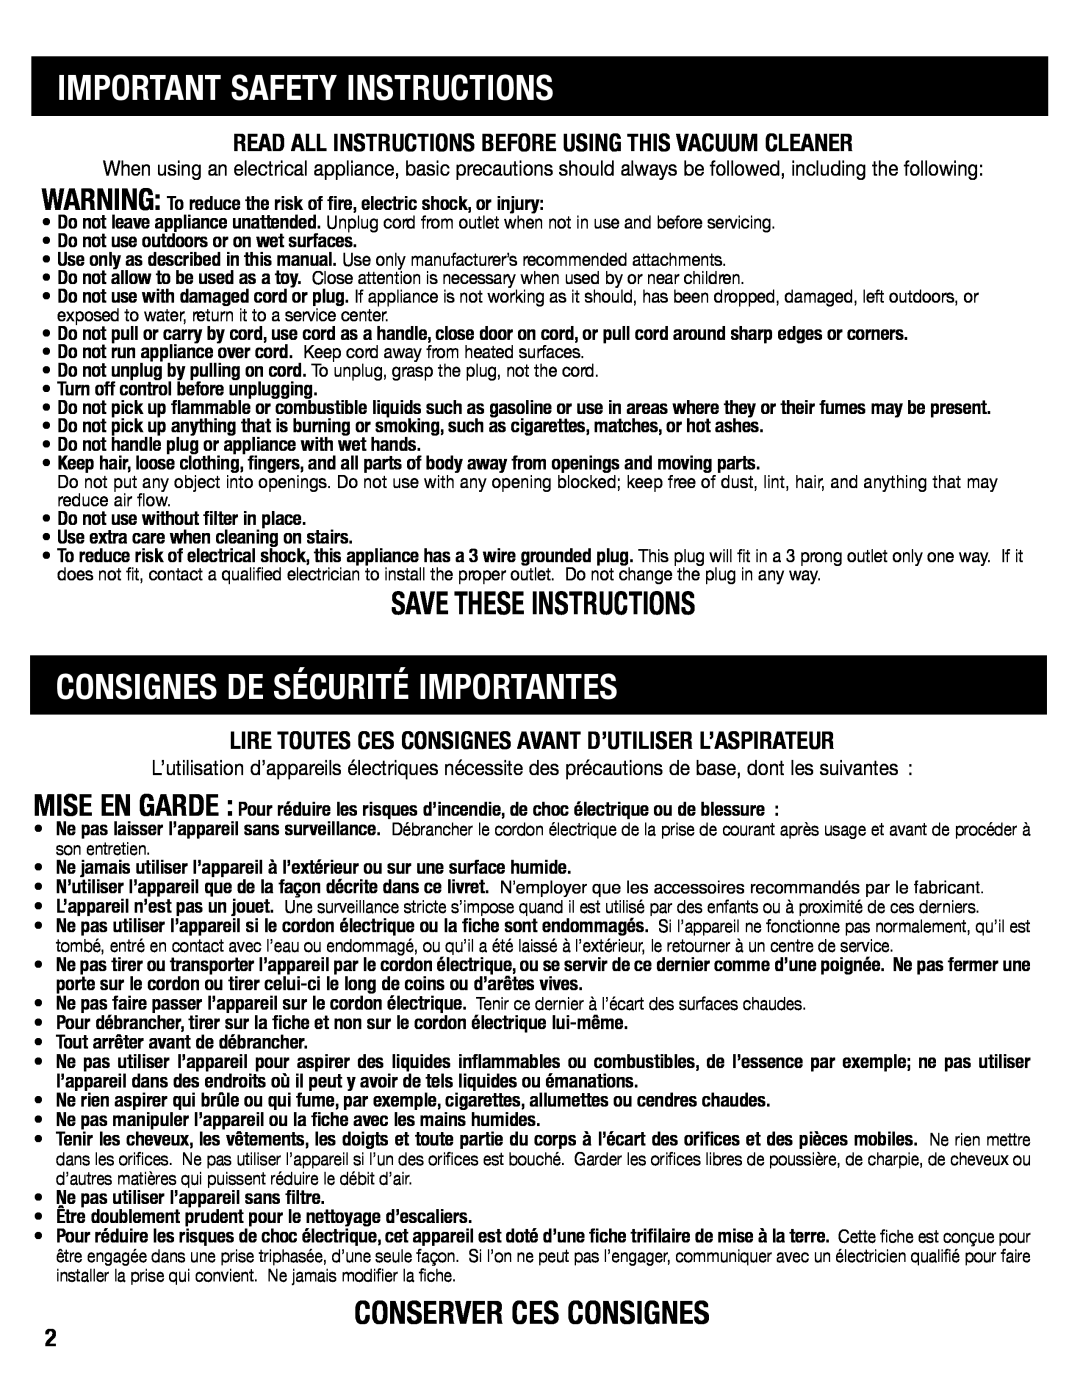 Eureka SC6610 manual Important Safety Instructions, Consignes De Sécurité Importantes, Save These Instructions 